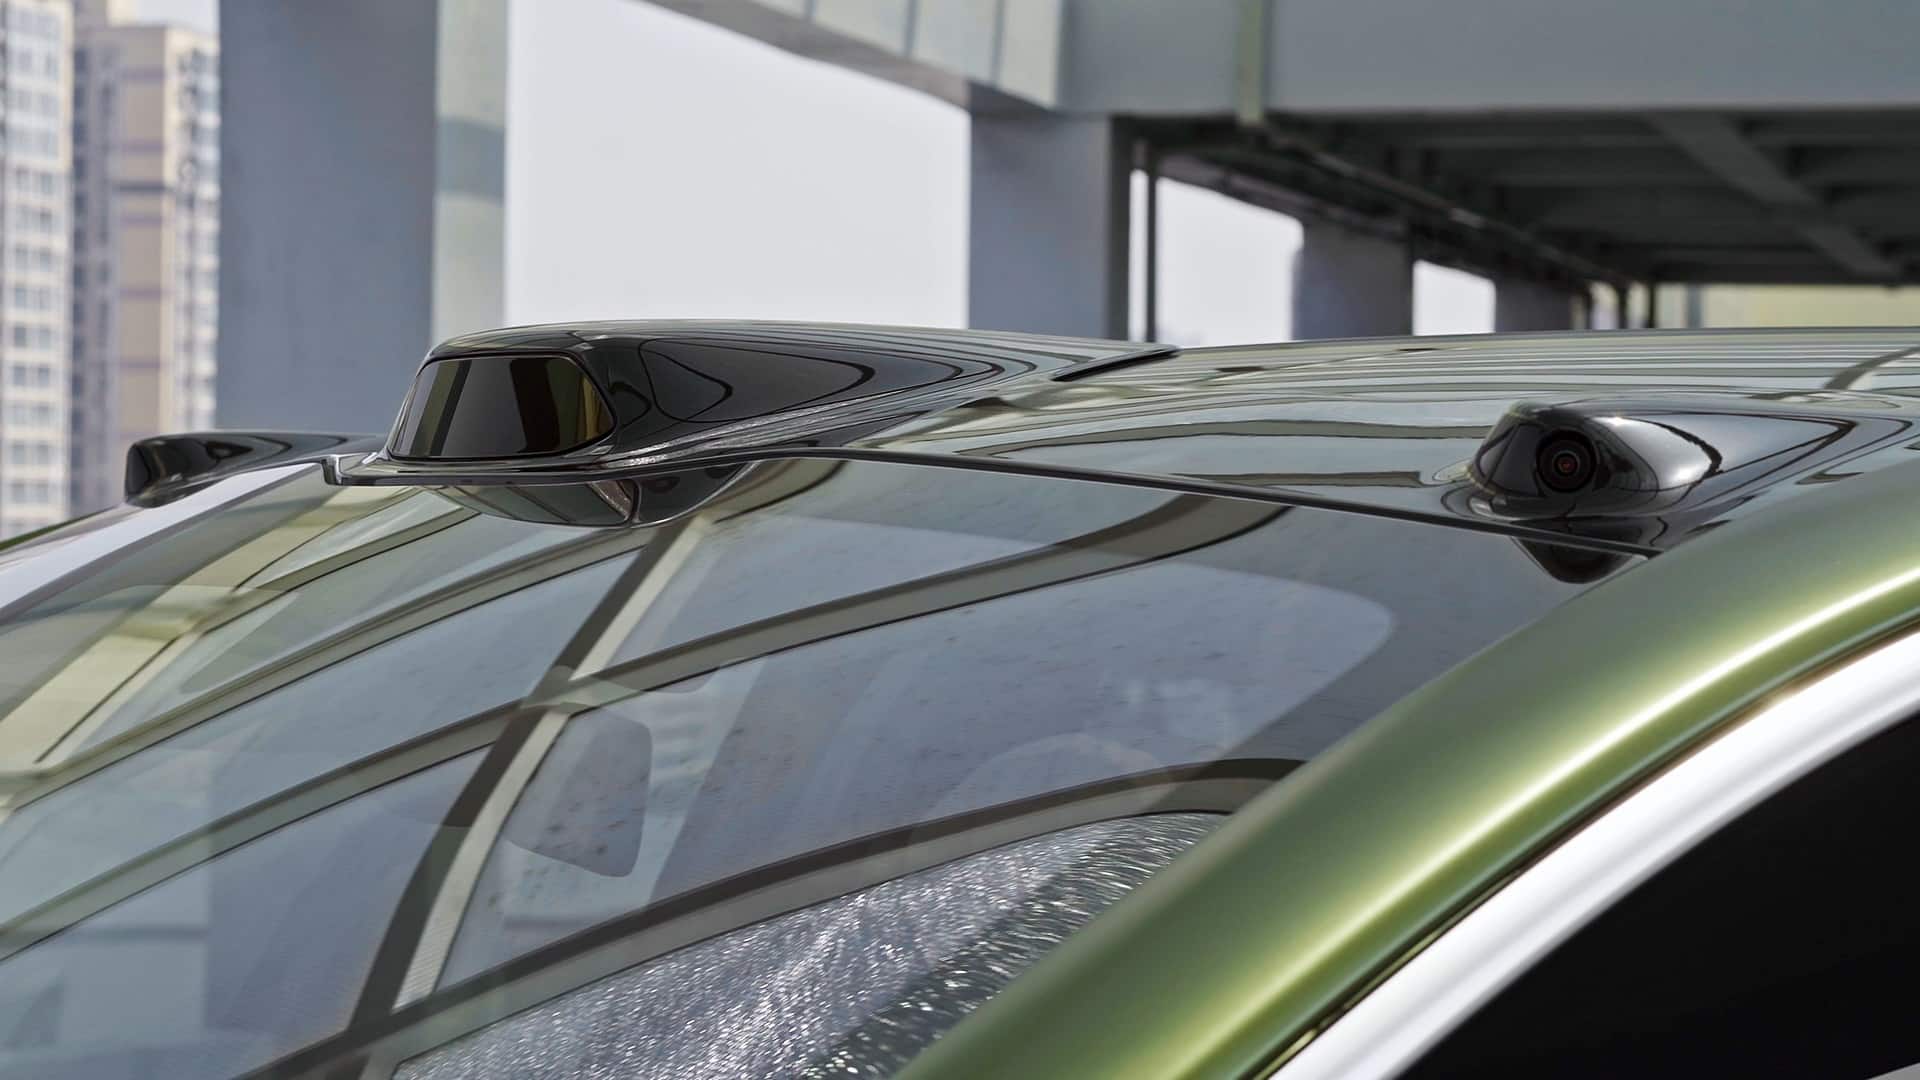 Лидар ET25 от Hesai Technology предназначен для установки внутри салона и за лобовым стеклом автомобиля, в отличие от традиционных моделей, которые размещаются снаружи.